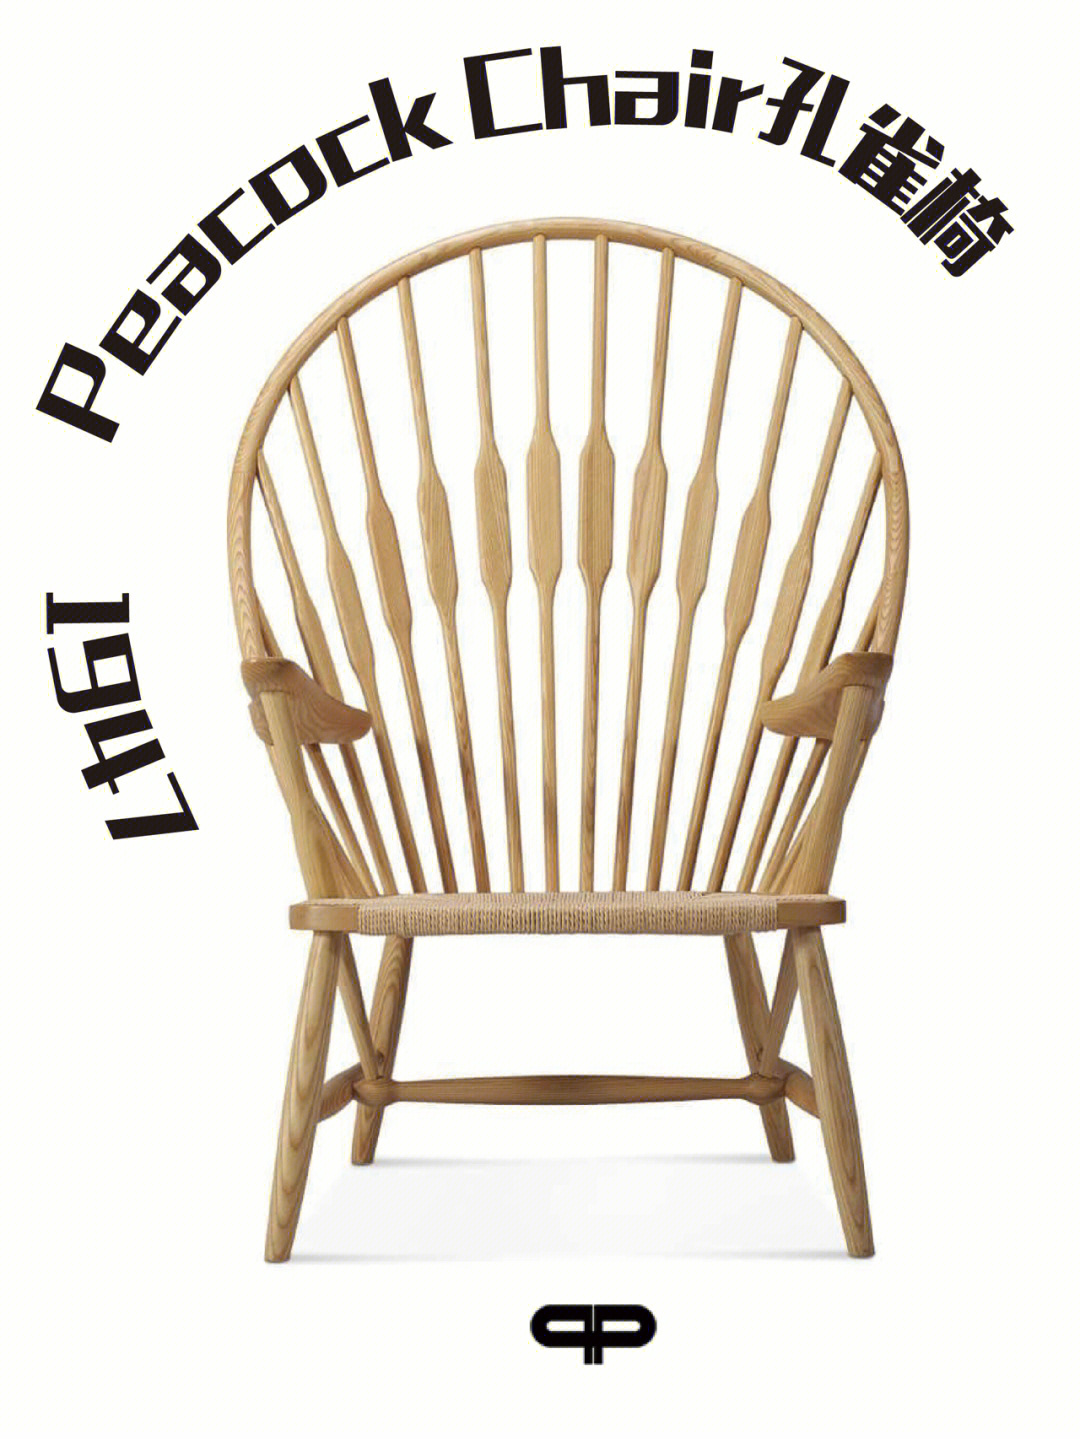 名称:peacock chair孔雀椅设计师:丹麦设计家汉斯.华格纳 hans j.